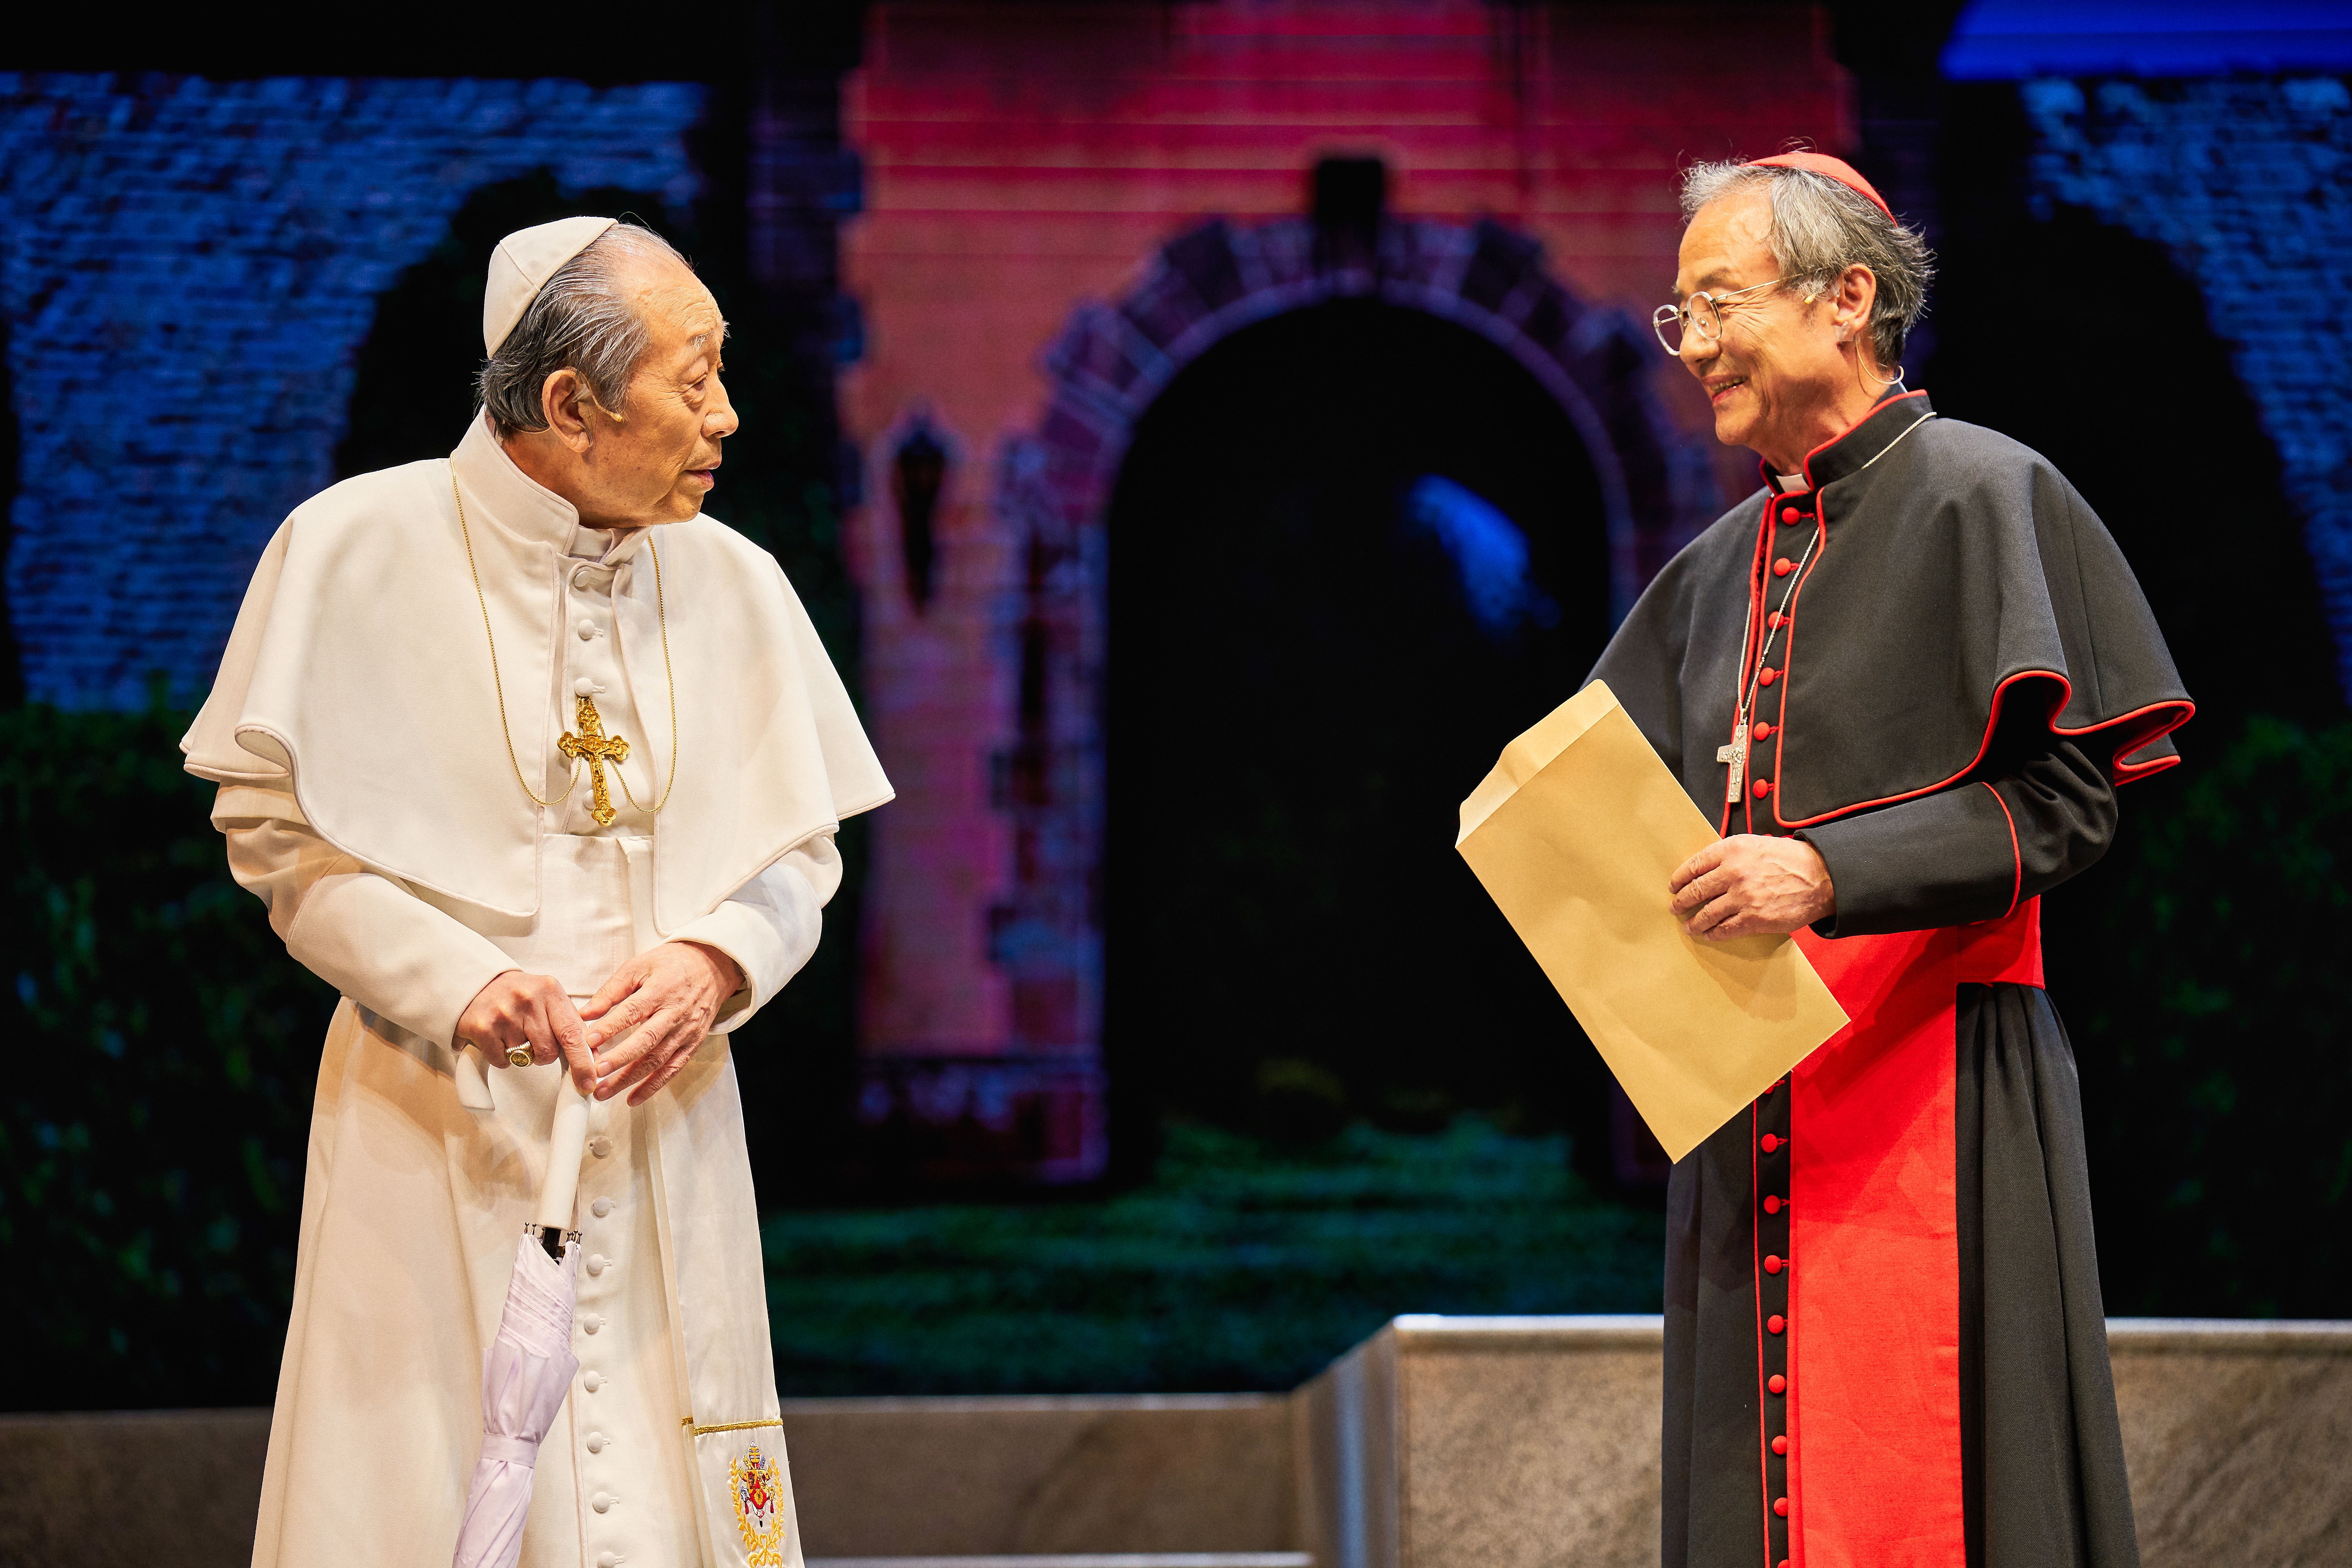 지난달 30일 첫 공연 때 베네딕토 16세와 프란치스코 교황으로 열연하는 두 배우의 모습. 　에이콤 제공